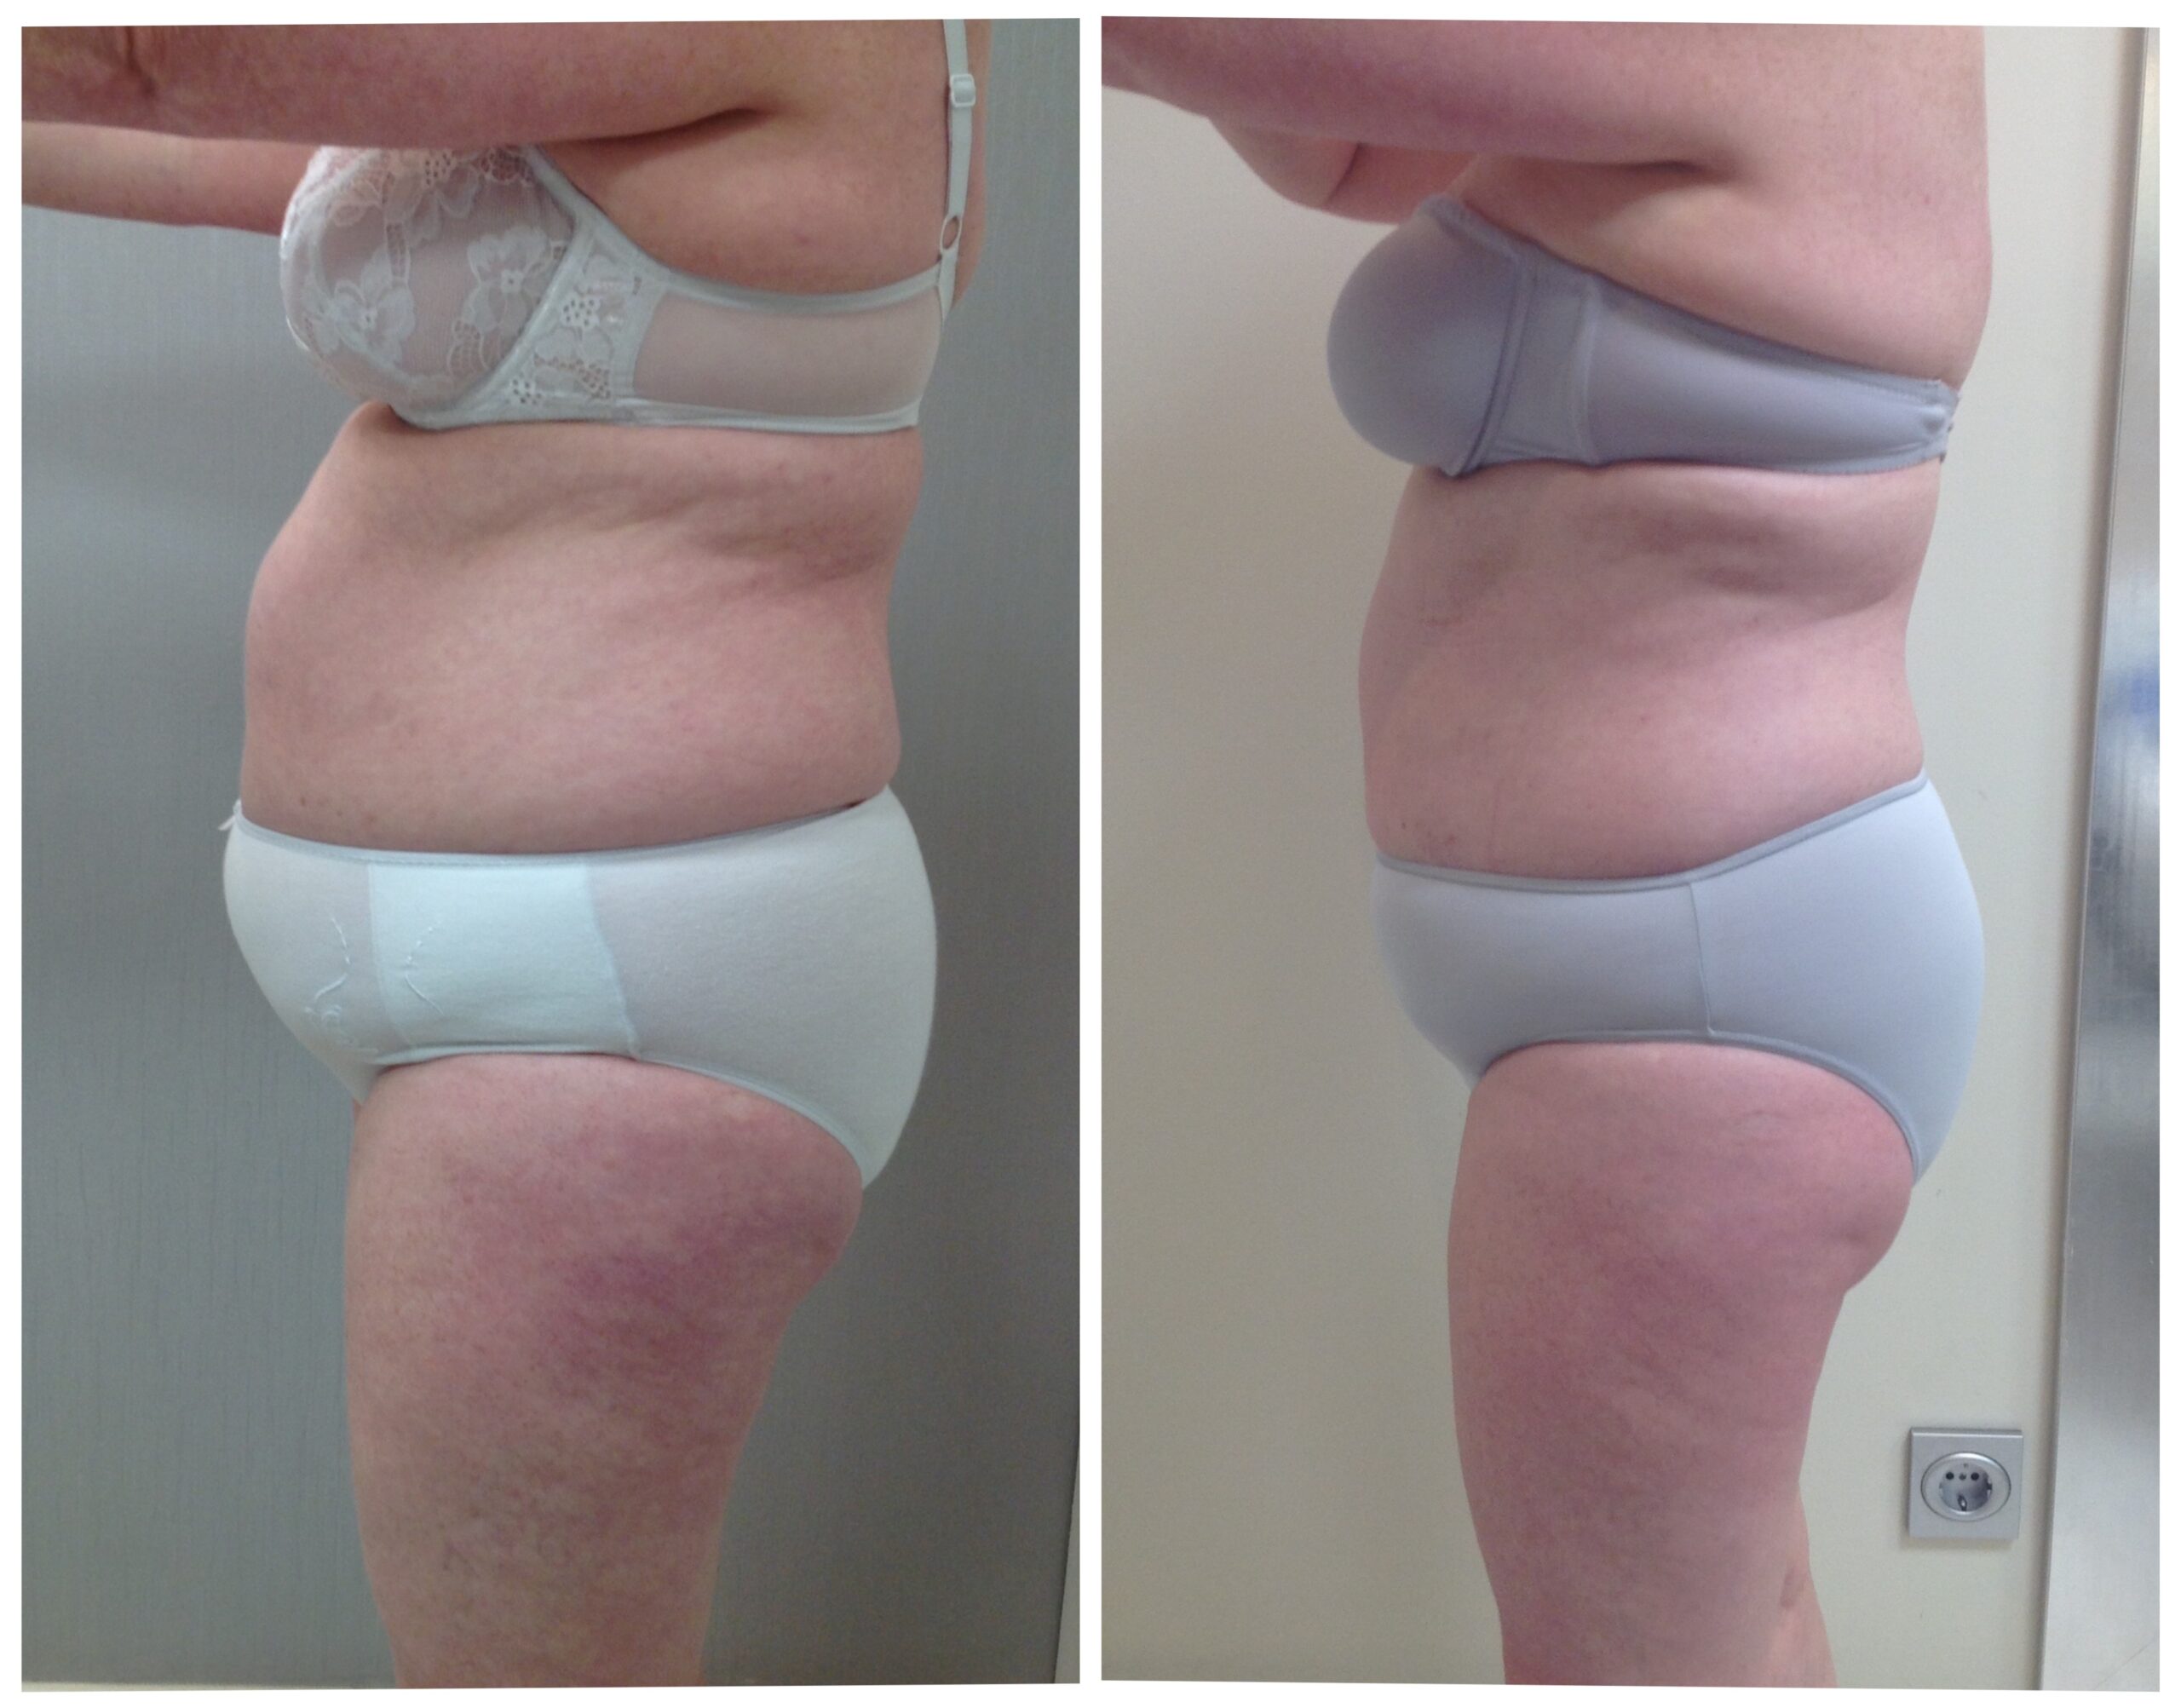 Reducir cintura, remodelar abdomen - Marquessa Tratamientos Estéticos